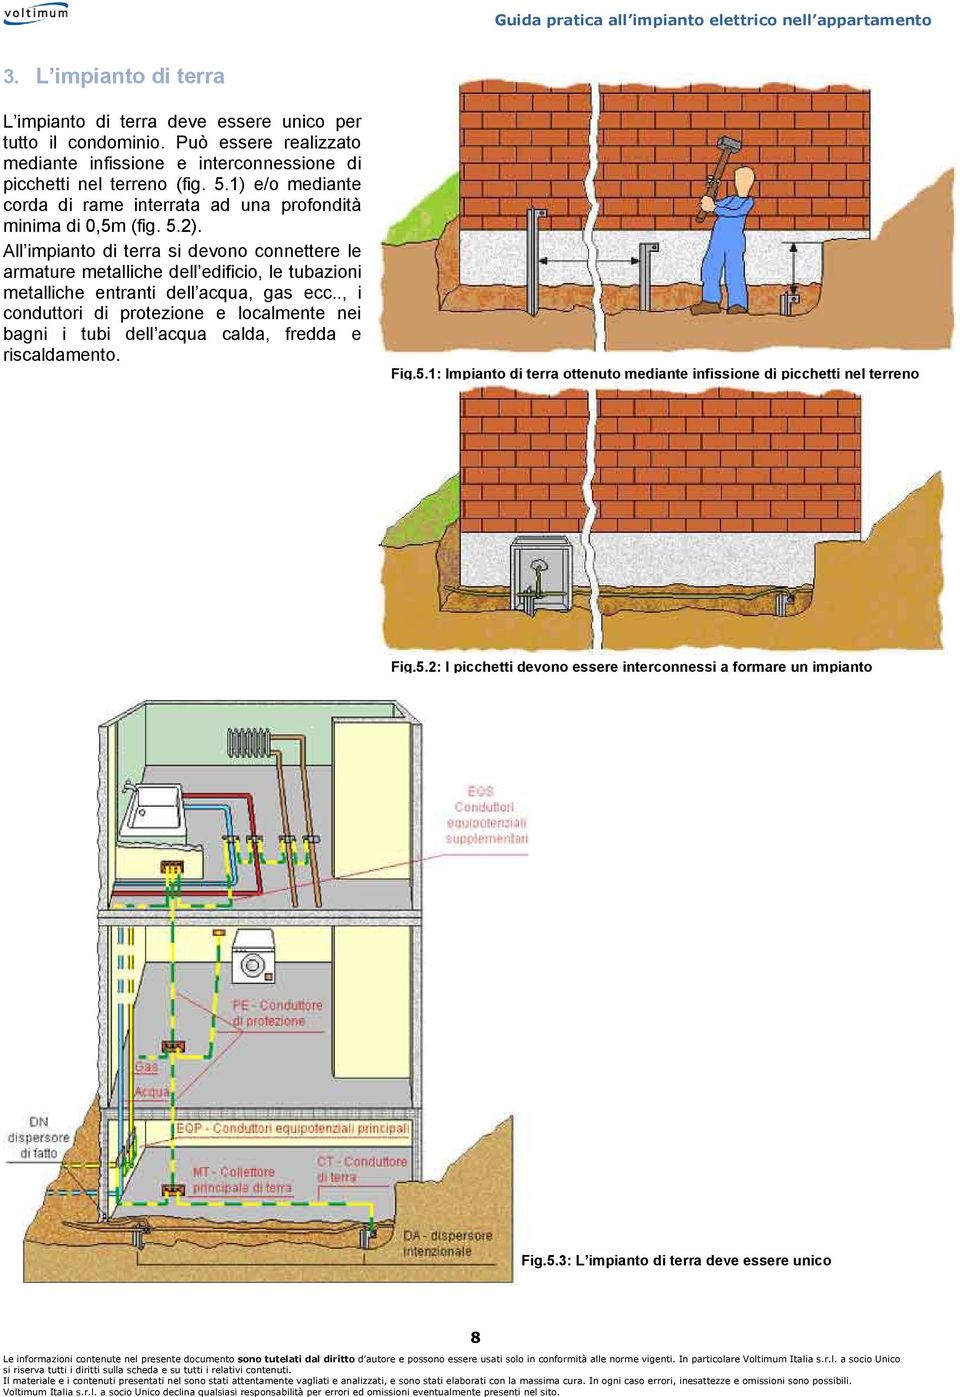 All impianto di terra si devono connettere le armature metalliche dell edificio, le tubazioni metalliche entranti dell acqua, gas ecc.